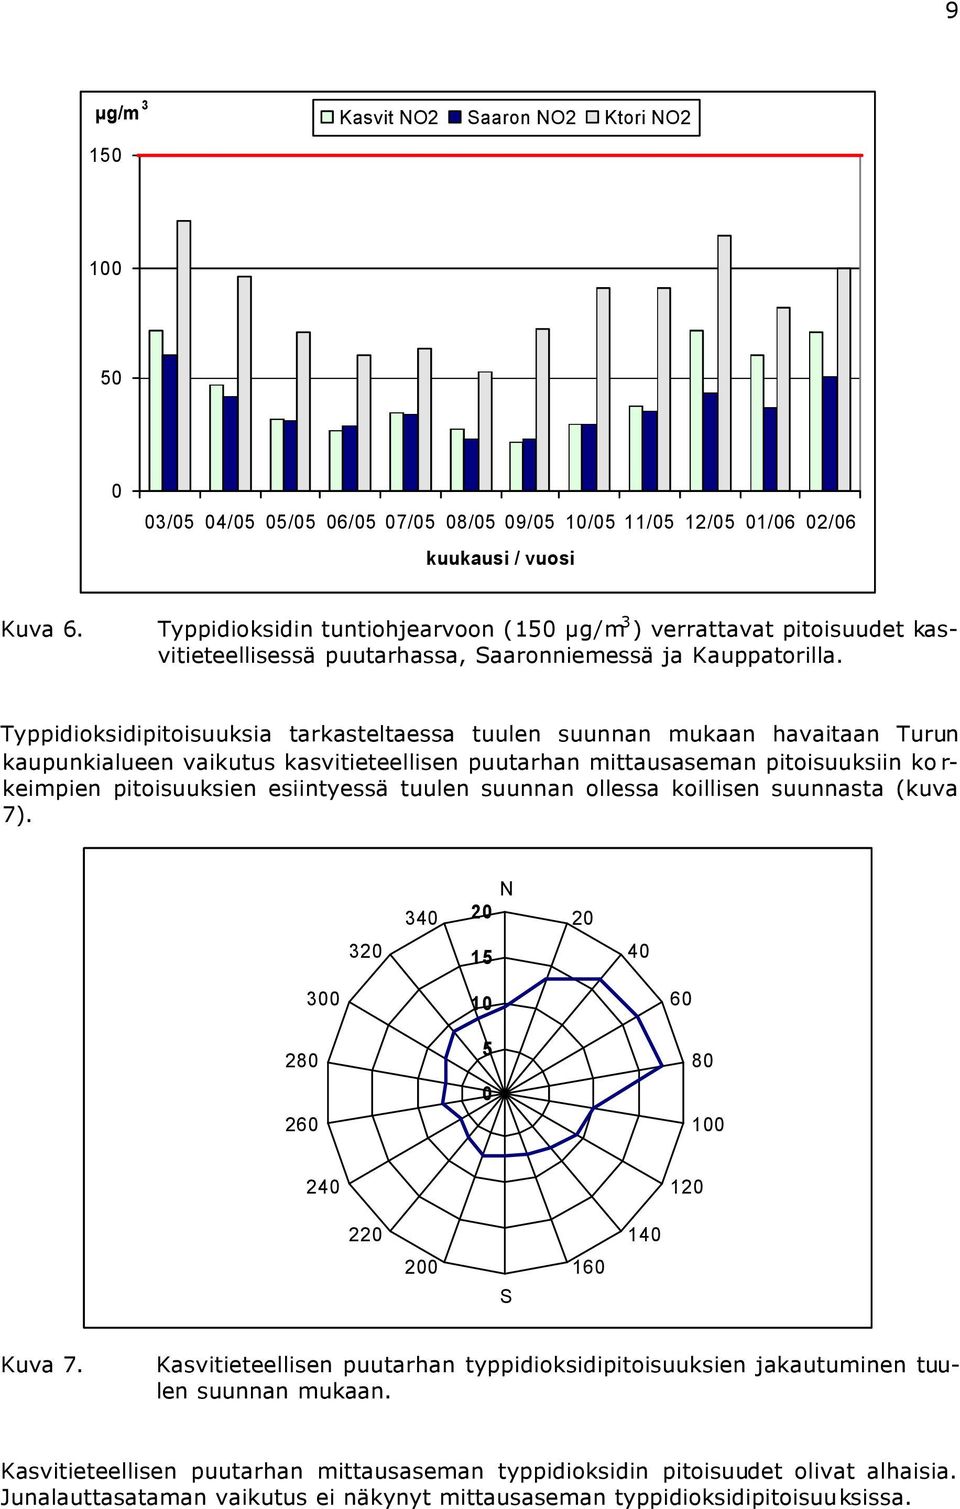 Typpidioksidipitoisuuksia tarkasteltaessa tuulen suunnan mukaan havaitaan Turun kaupunkialueen vaikutus kasvitieteellisen puutarhan mittausaseman pitoisuuksiin korkeimpien pitoisuuksien esiintyessä